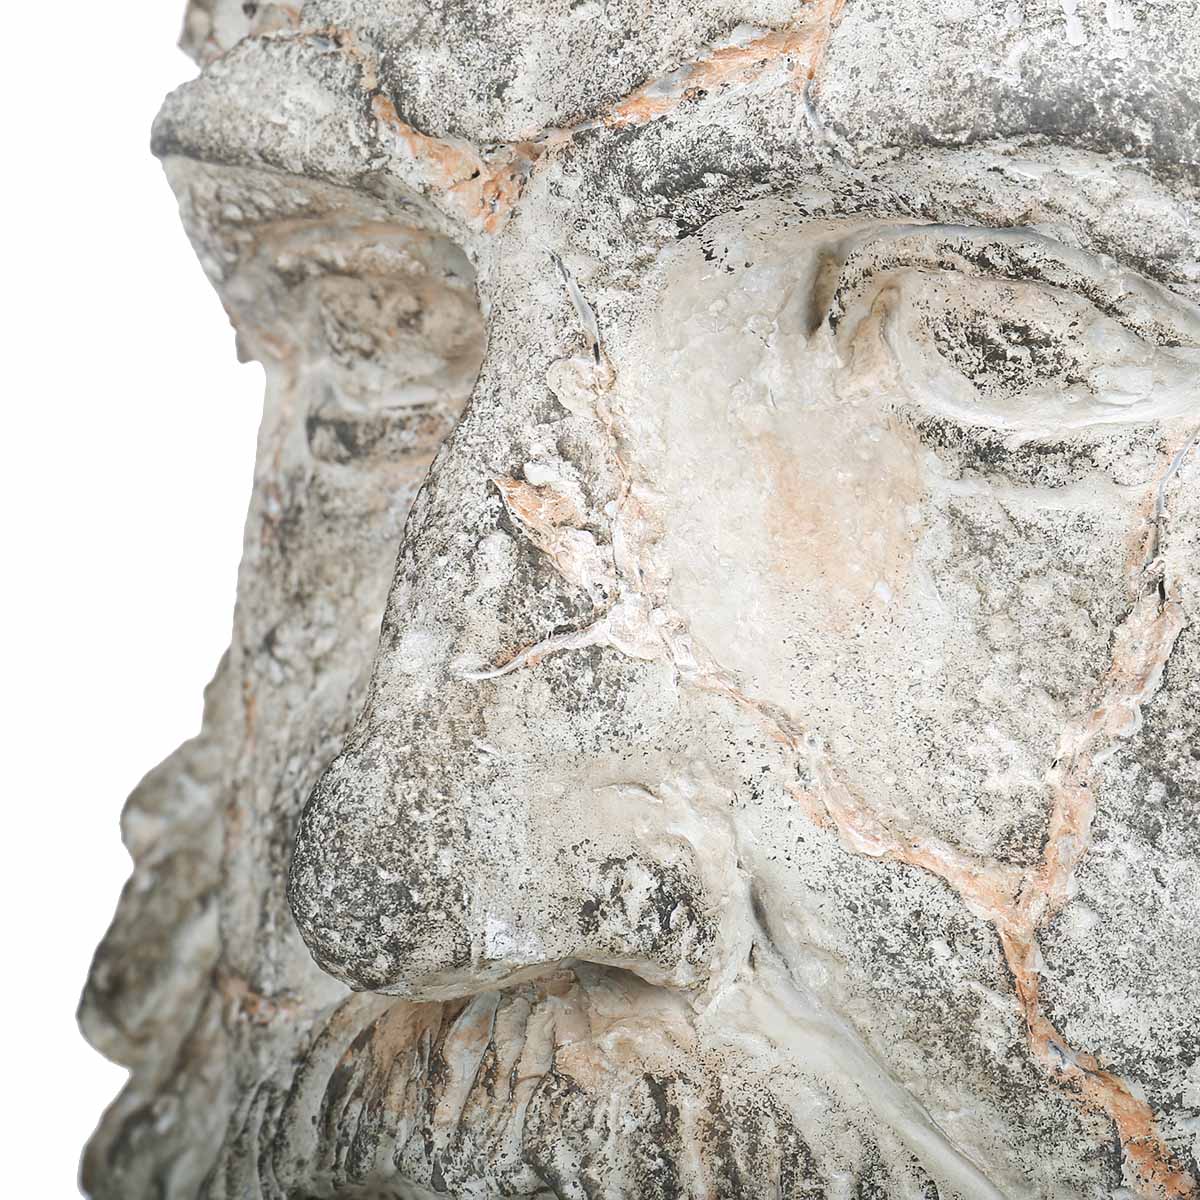 Man Face Sculpture 